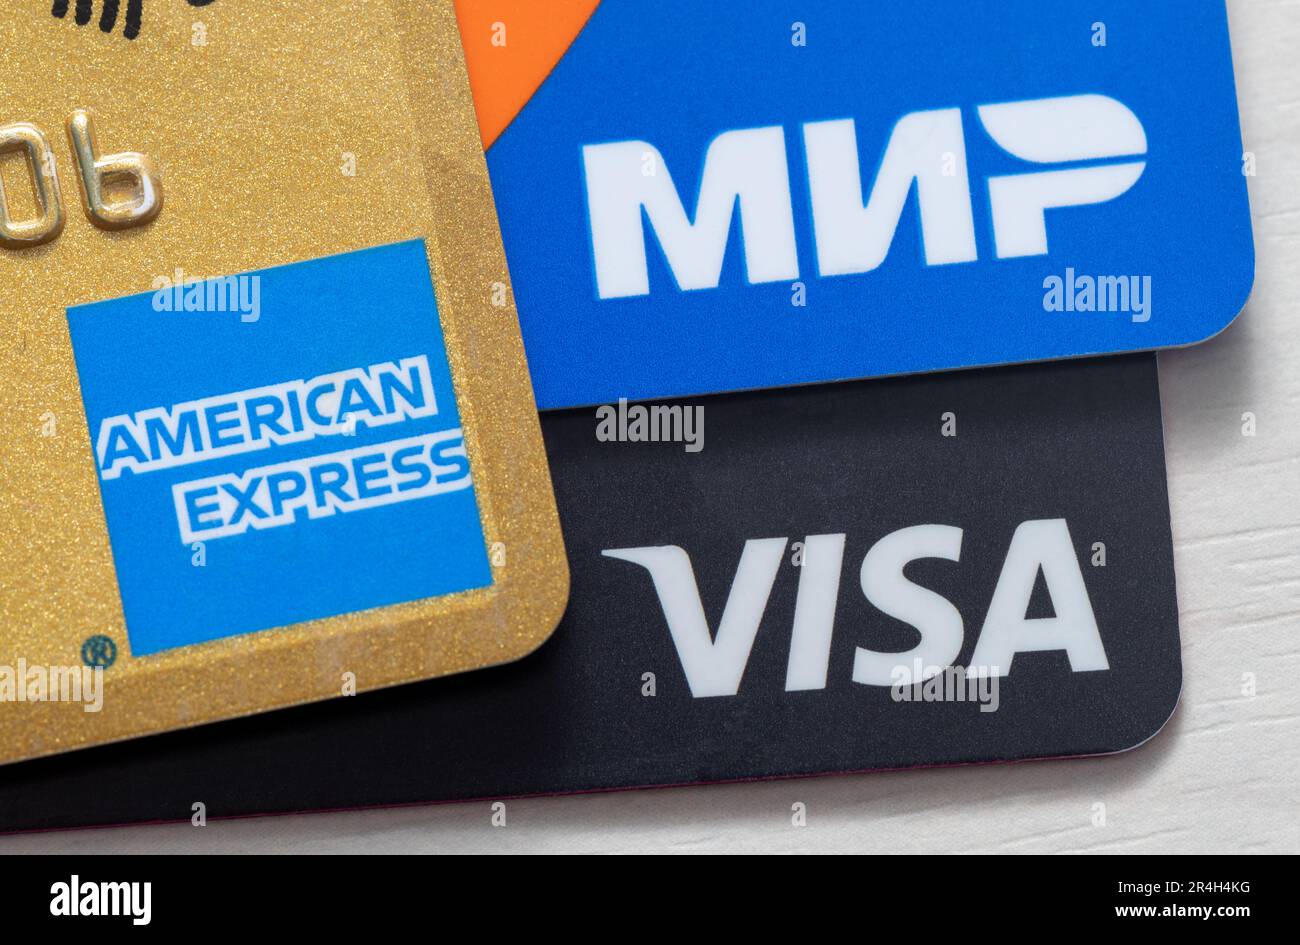 Les cartes Visa, American Express et Mir ont été prises en gros plan. Visa  et Amex sont des systèmes de paiement américains. Mir est un système de  paiement exploité par la Russie